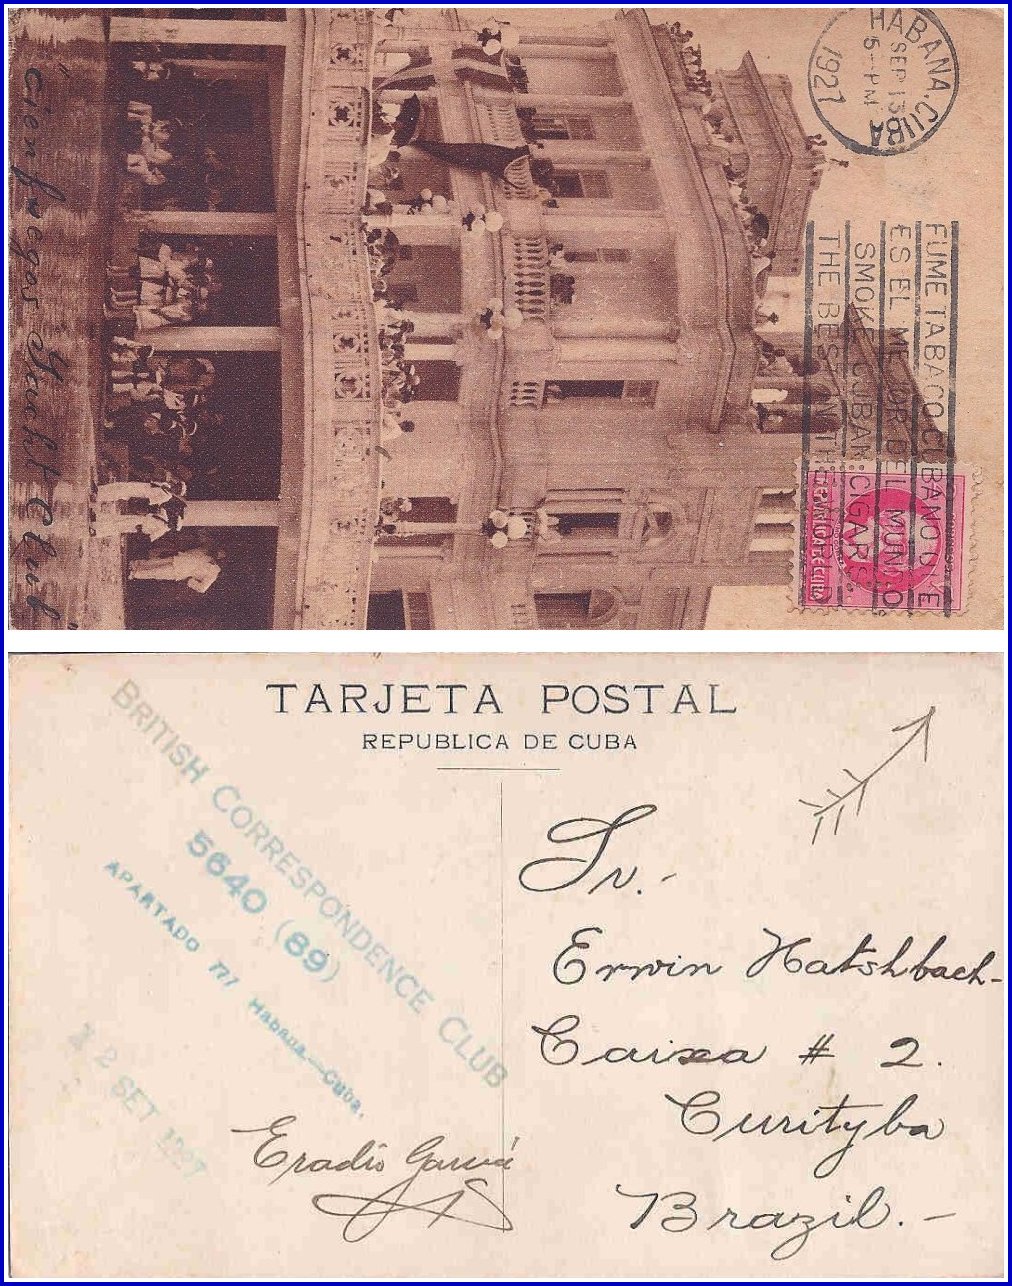 To Brazil - September 1927